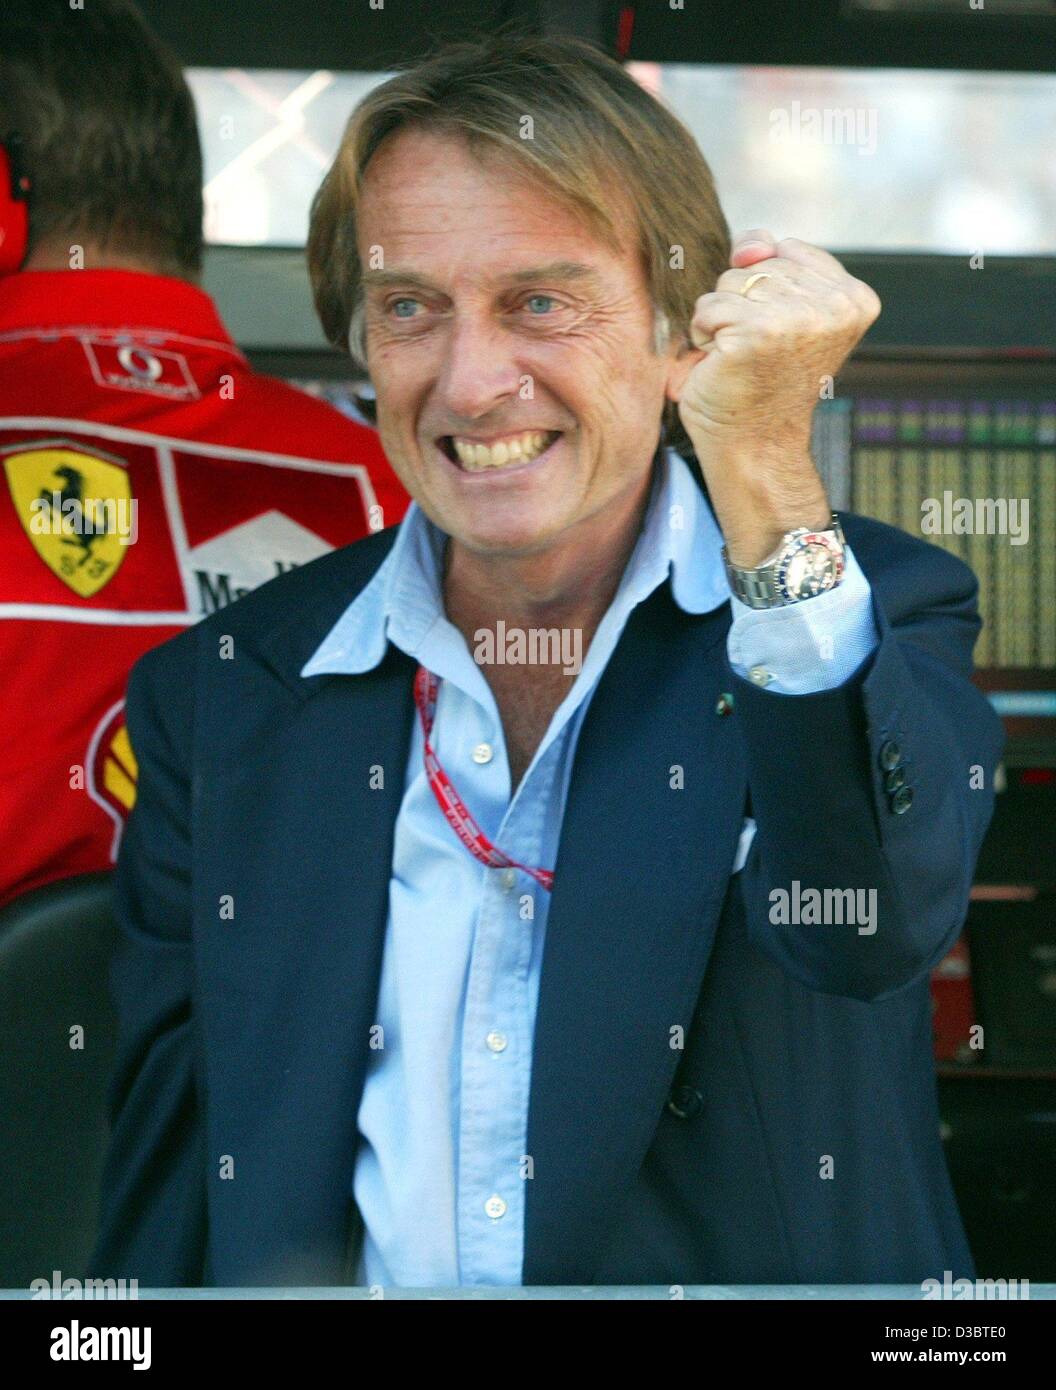 (Dpa) - Italiano il Presidente della Ferrari Luca di Montezemolo die cheers dopo il suo autista terminato i corsi di formazione di qualifica con il miglior tempo in gara di Formula Uno in pista a Monza, Italia, 13 settembre 2003. Foto Stock